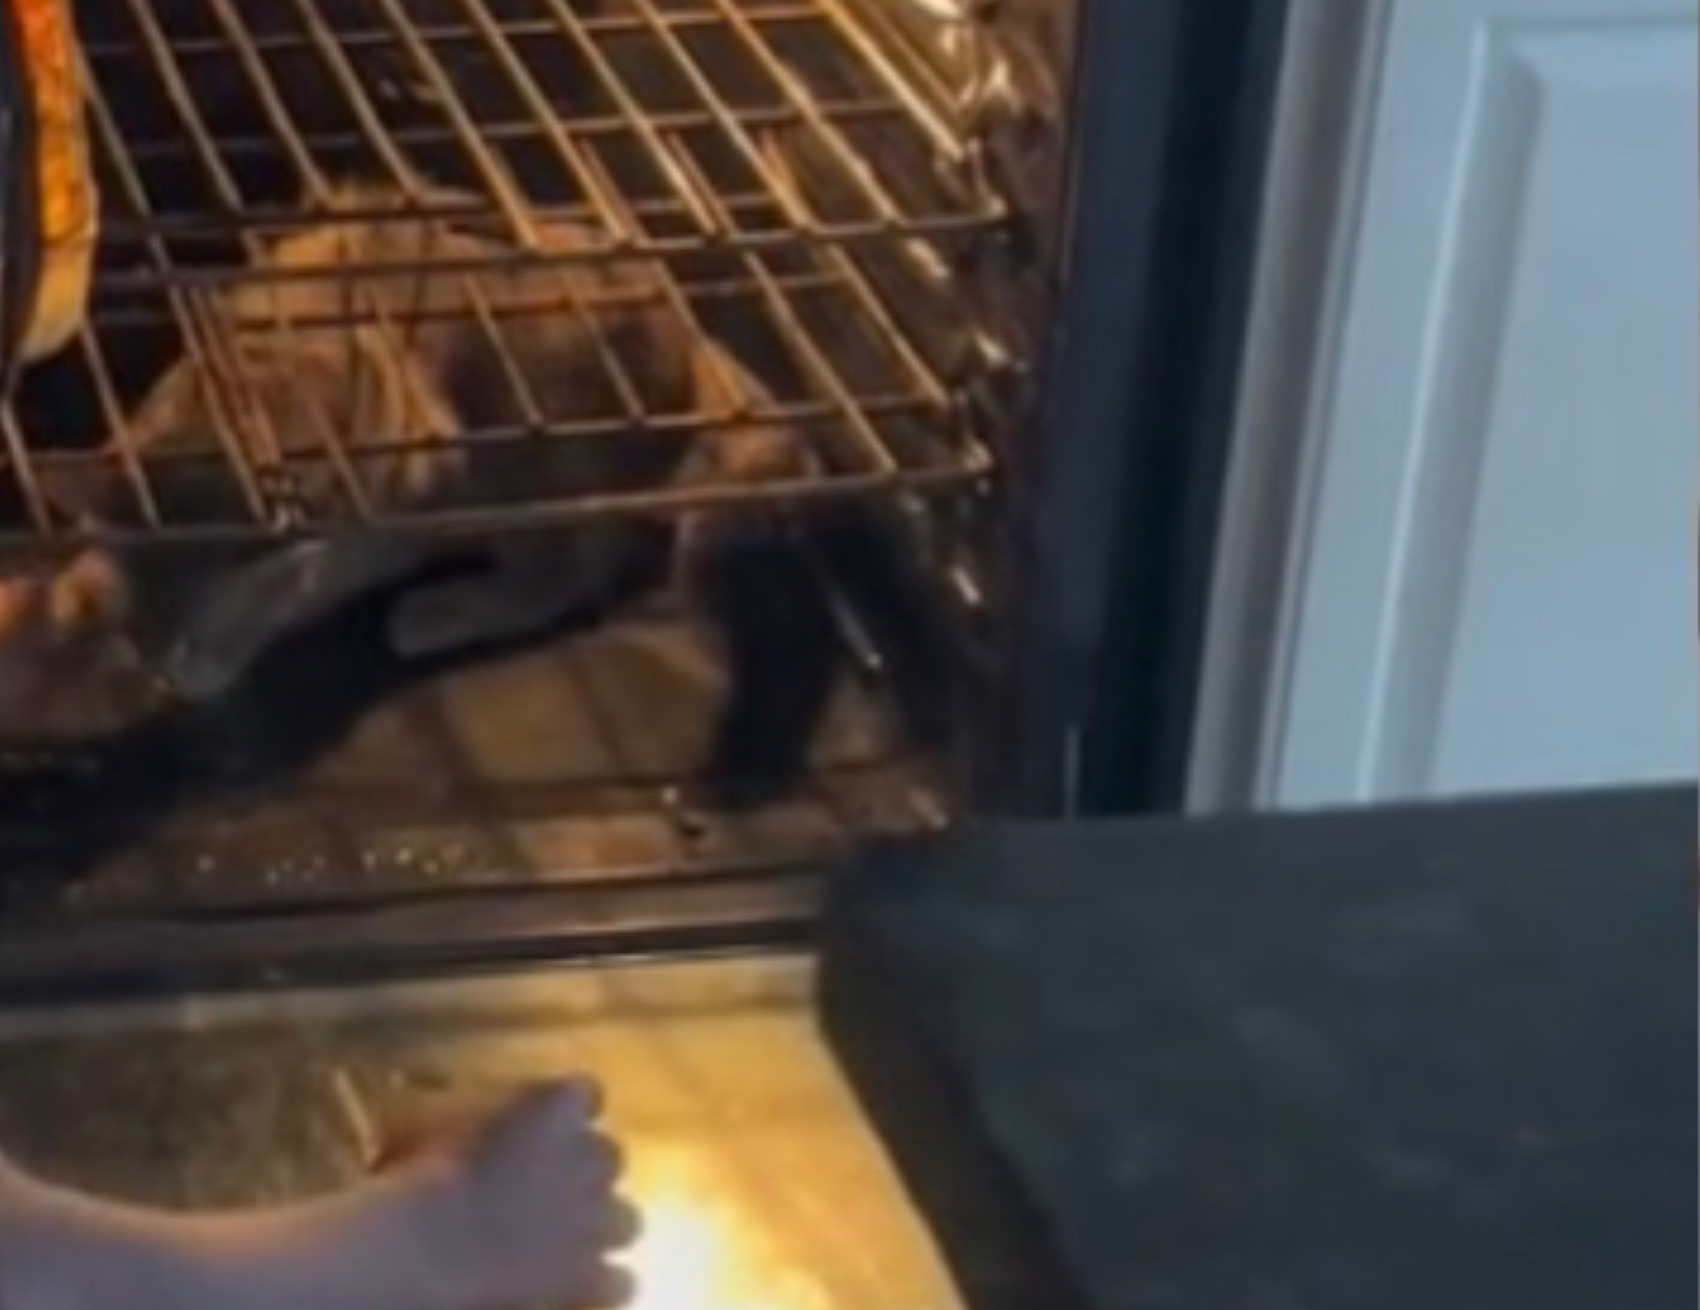 Gatto sta nel forno